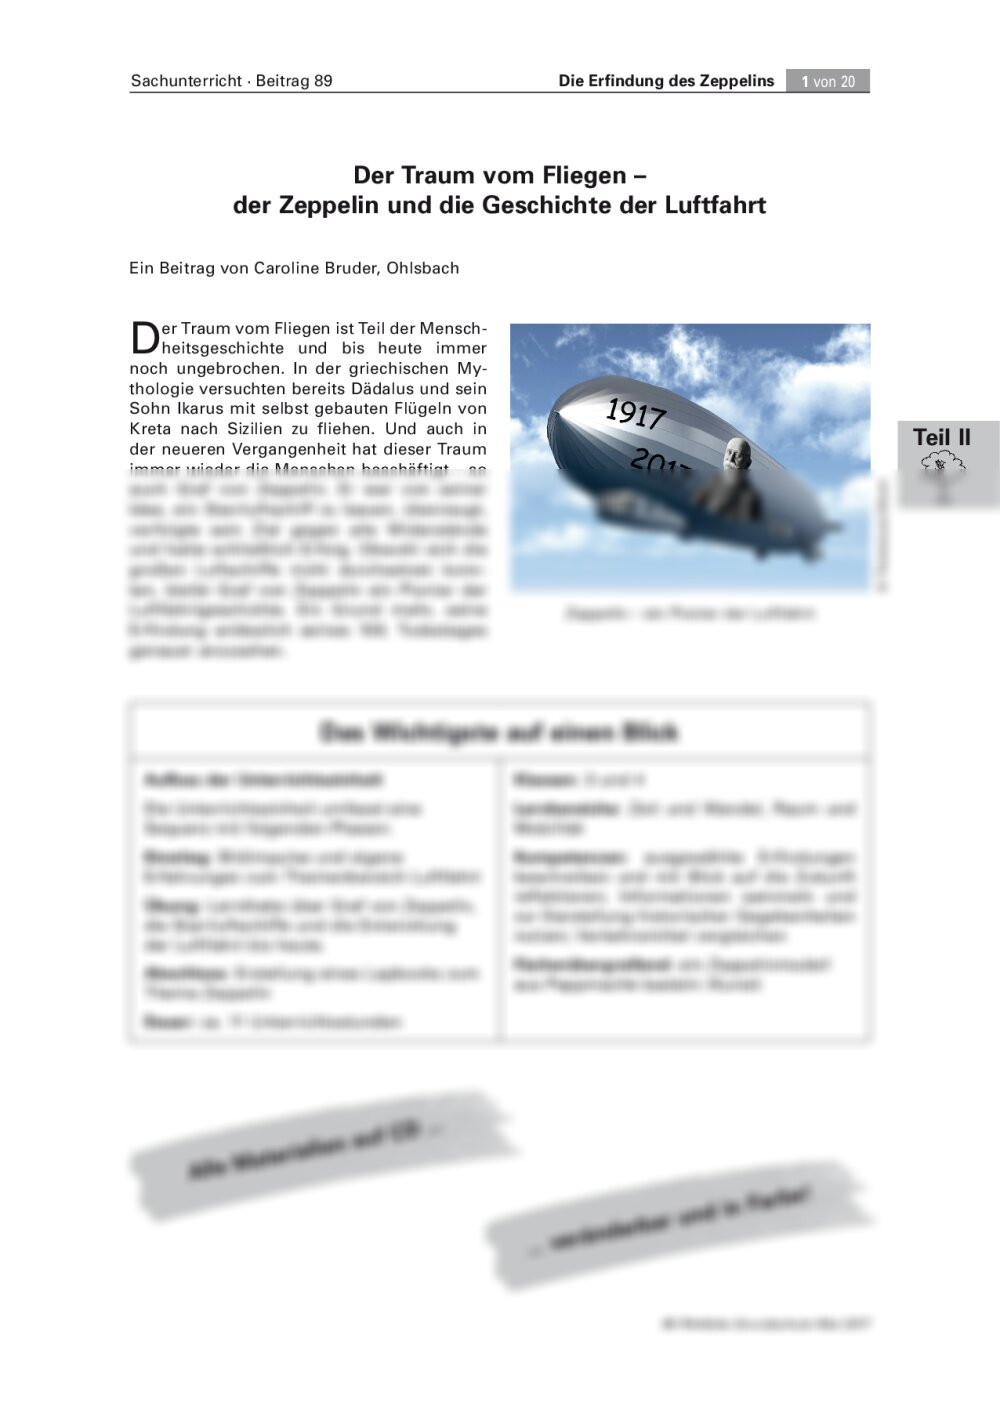 Der Zeppelin und die Geschichte der Luftfahrt - Seite 1